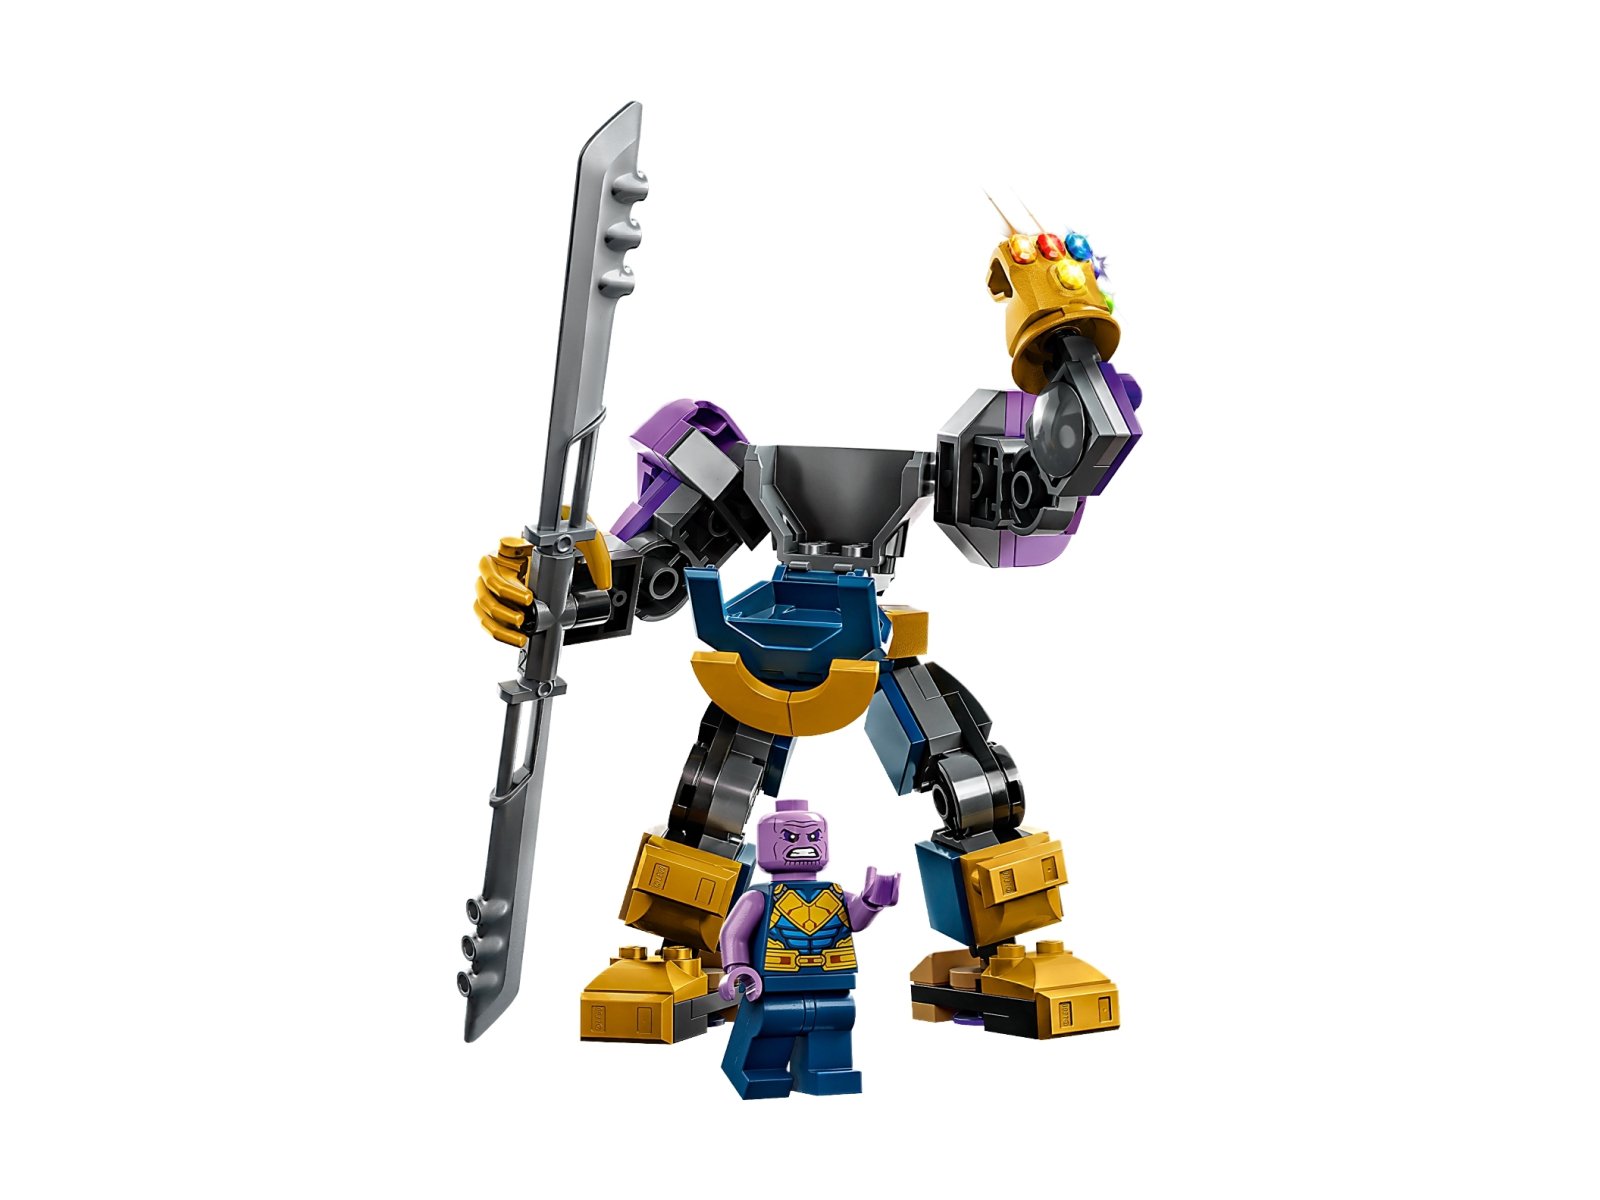 LEGO Marvel 76242 Mechaniczna zbroja Thanosa